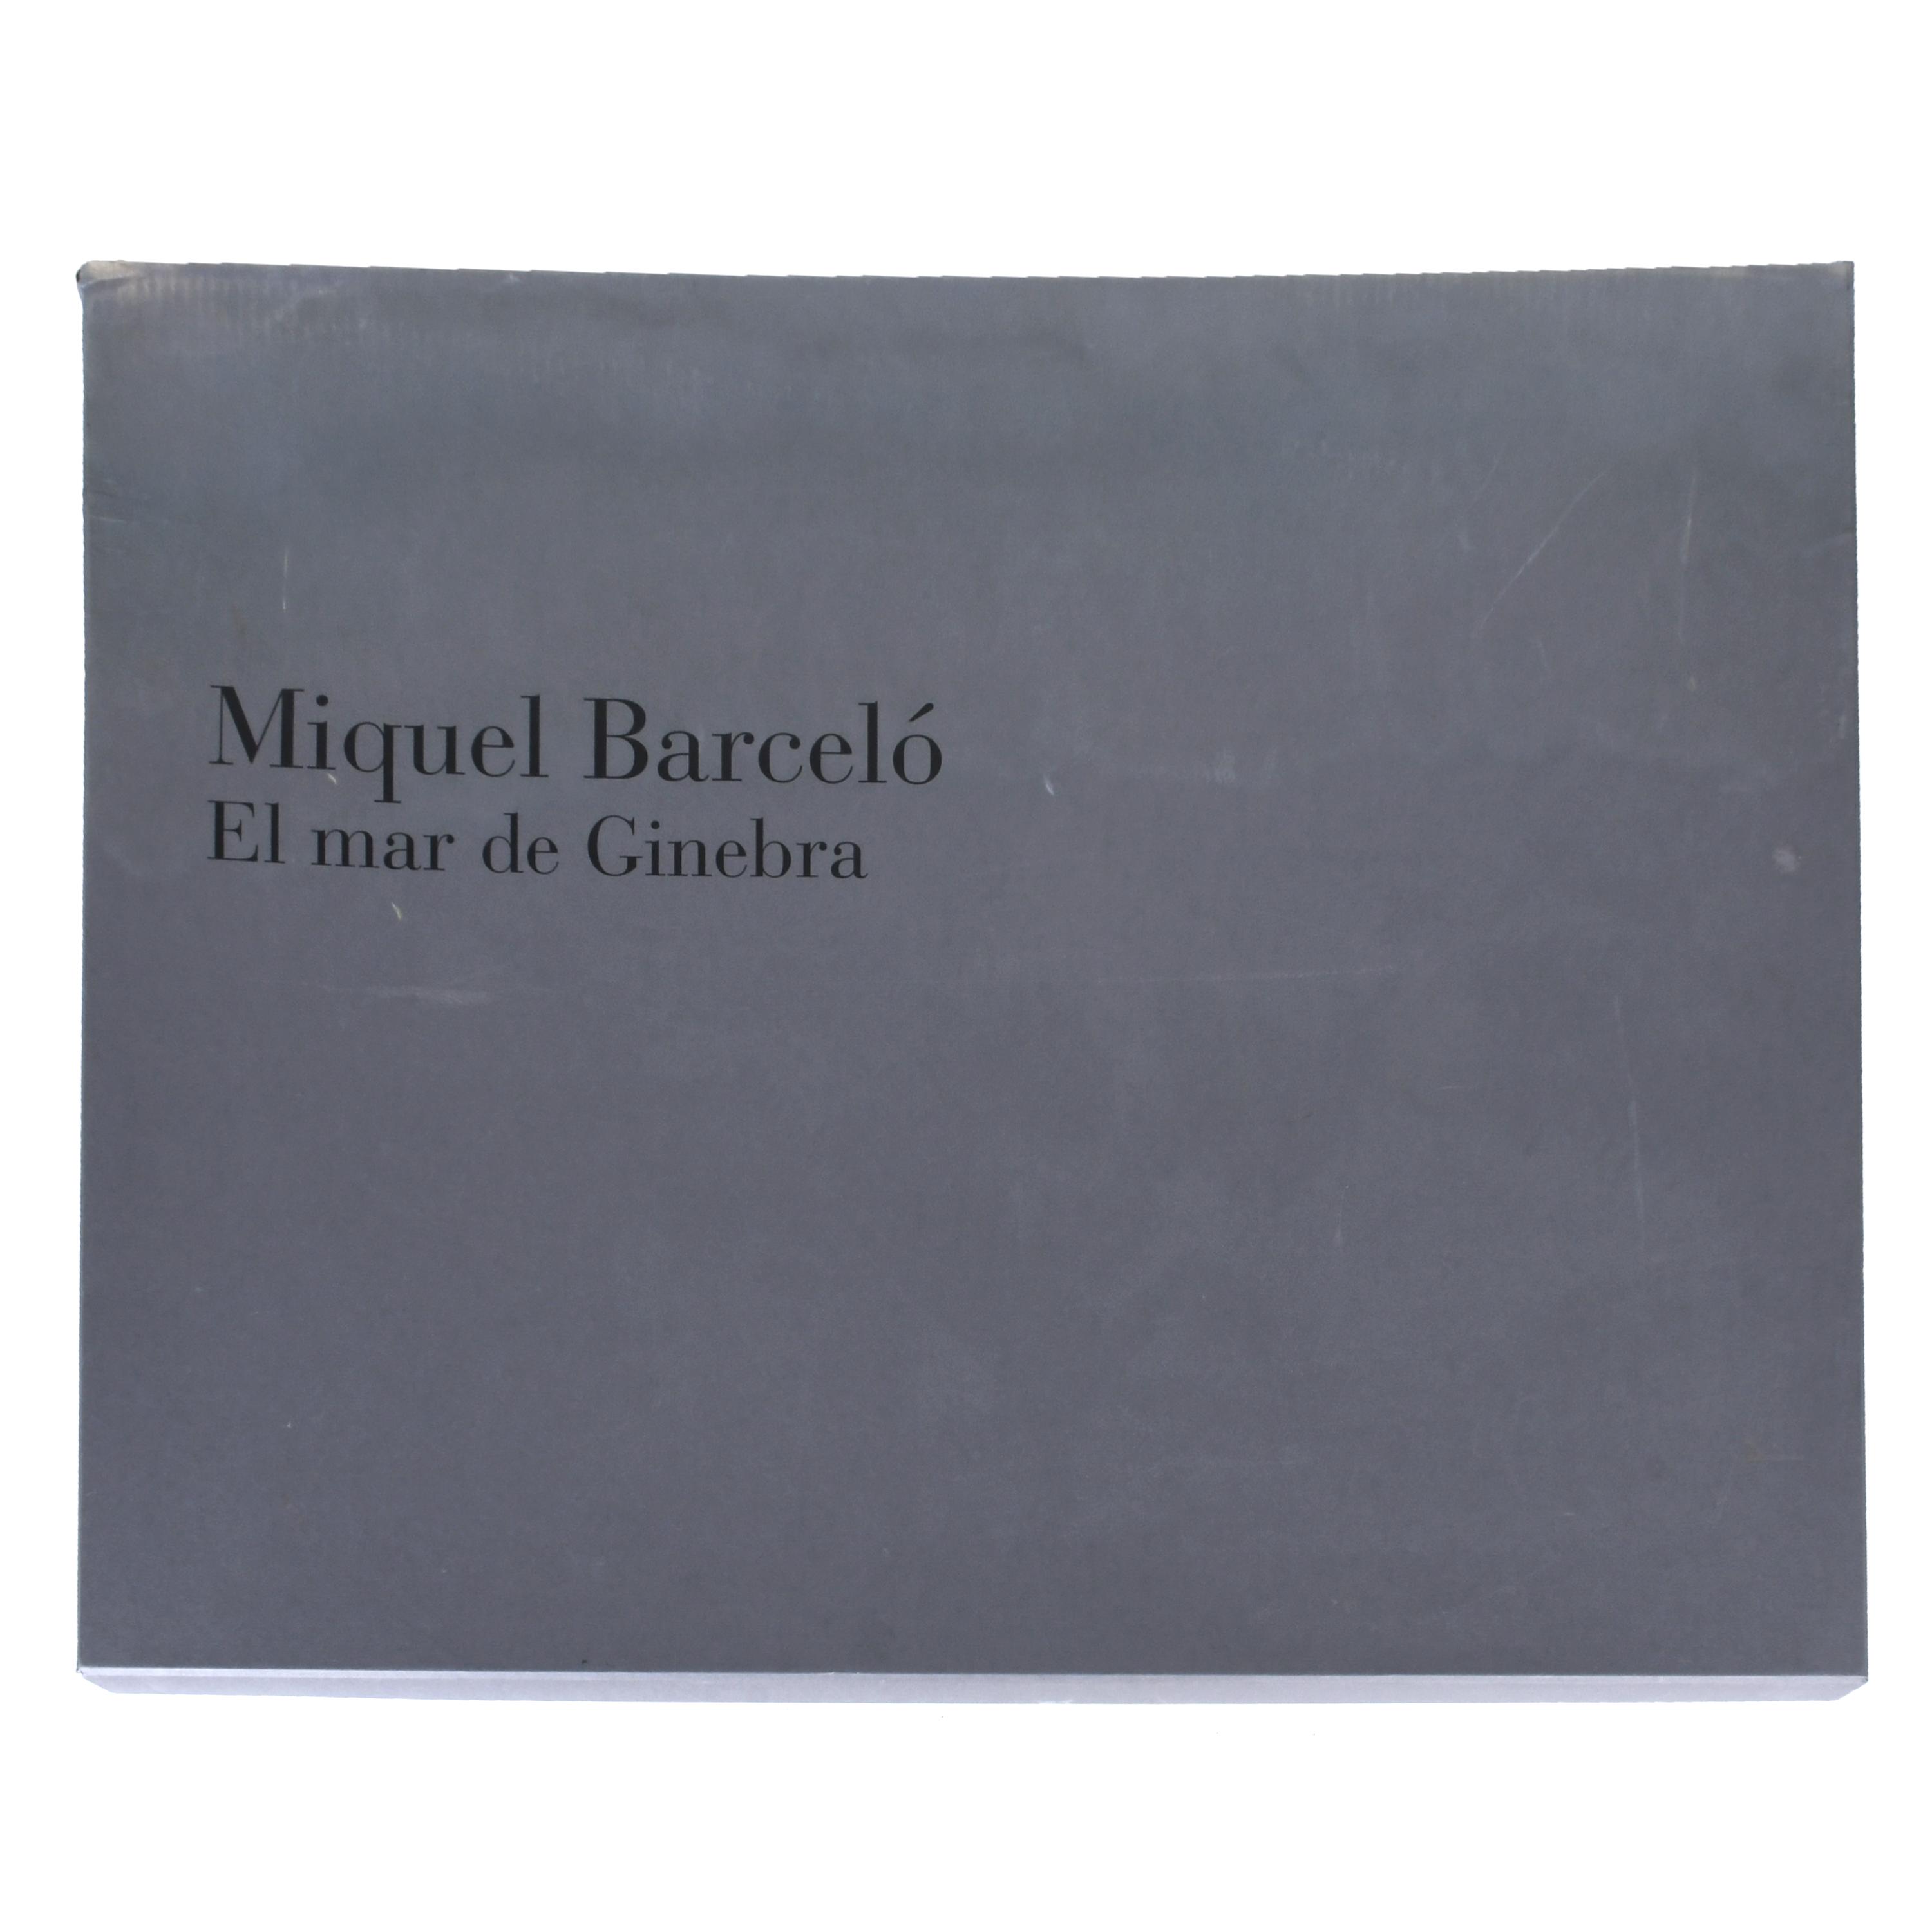 MIQUEL BARCELÓ (1957). "EL MAR DE GINEBRA".